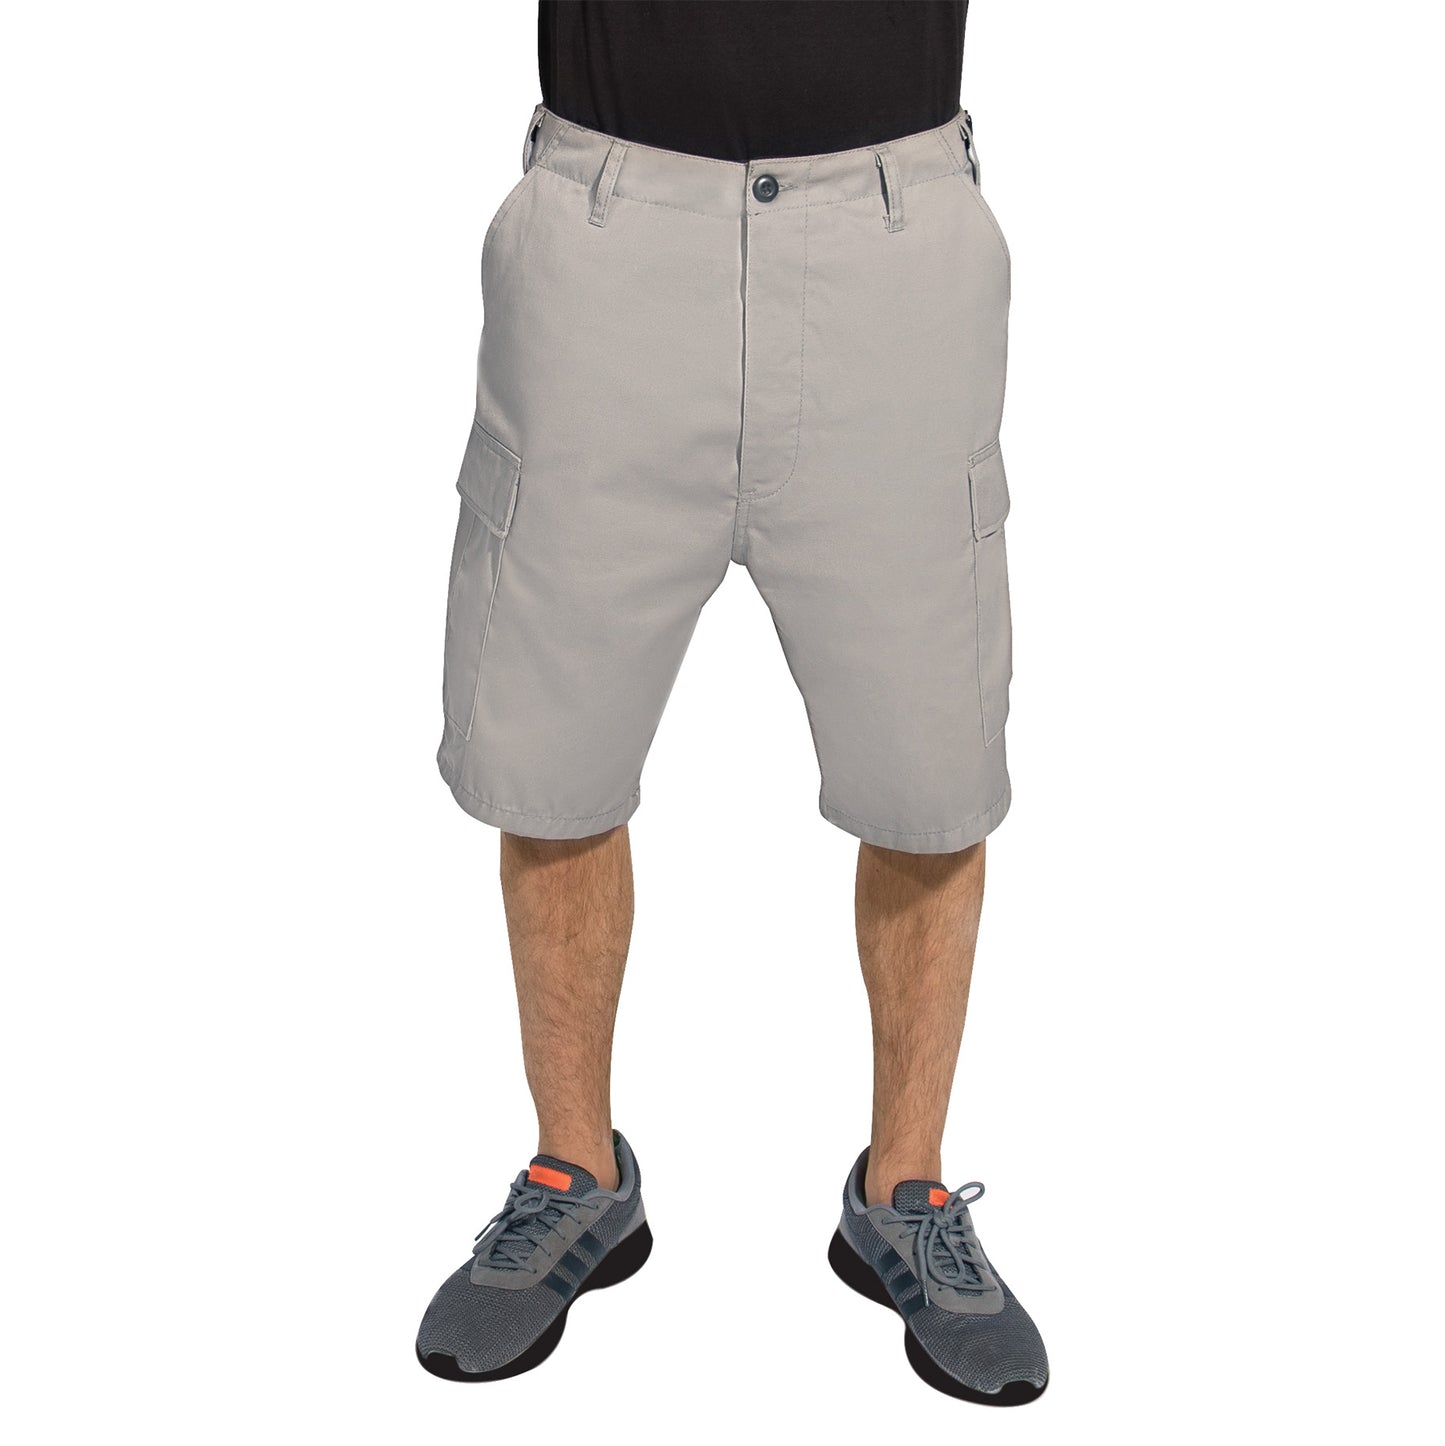 Rothco Tactical BDU Shorts - Grey